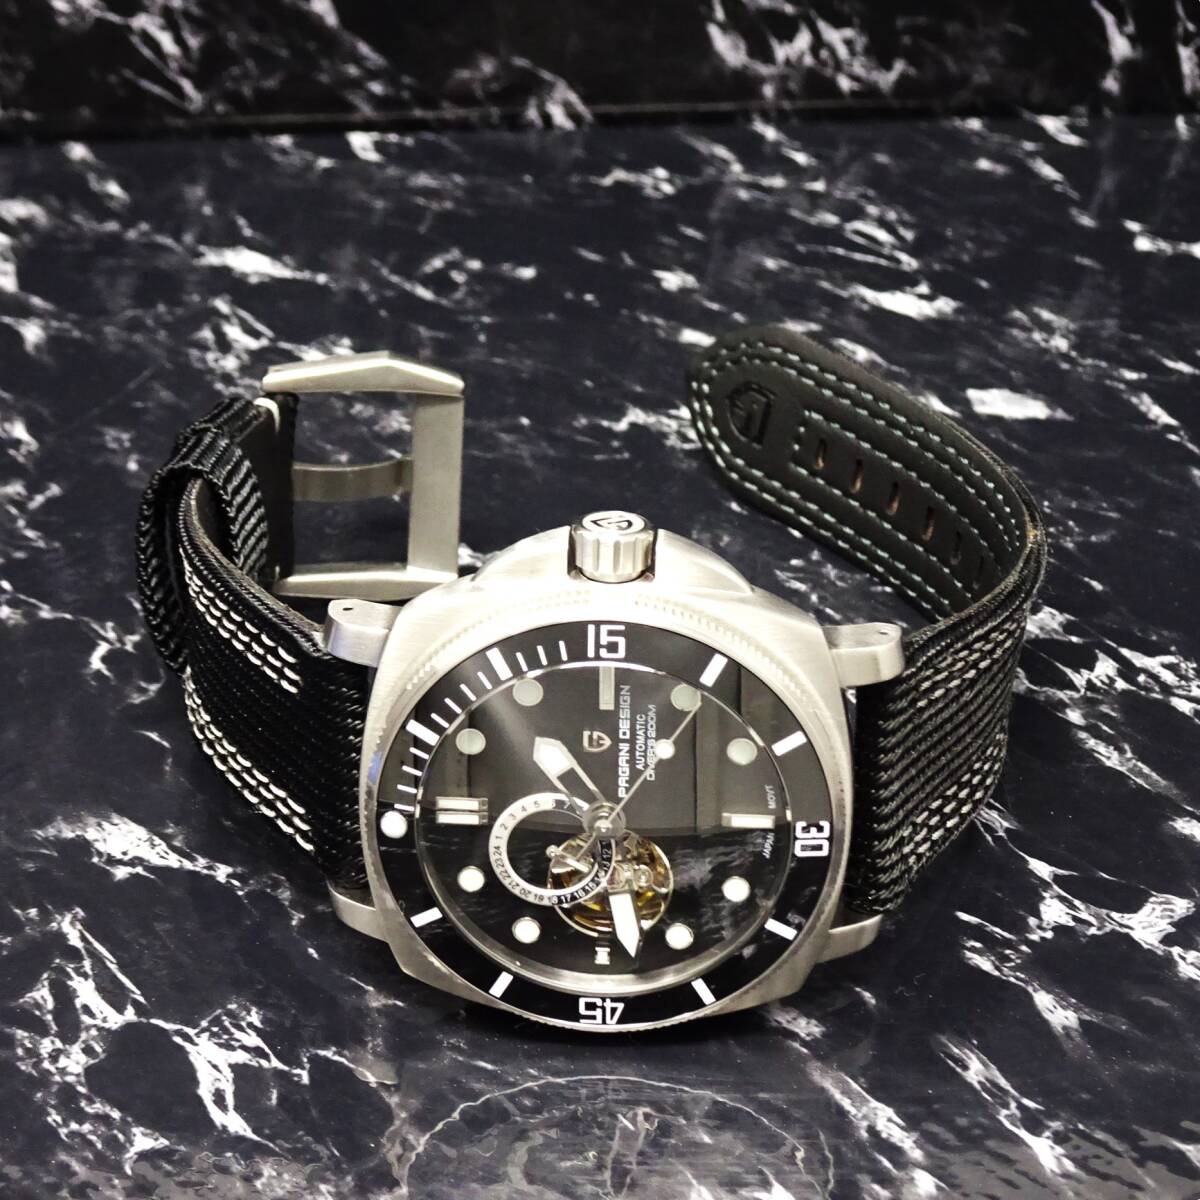 送料無料〓新品〓腕時計 パガーニデザイン PAGANI DESIGN 機械式・NH39Ａ・オープンハート・オマージュウォッチ・サファイア・PD-1736・BL